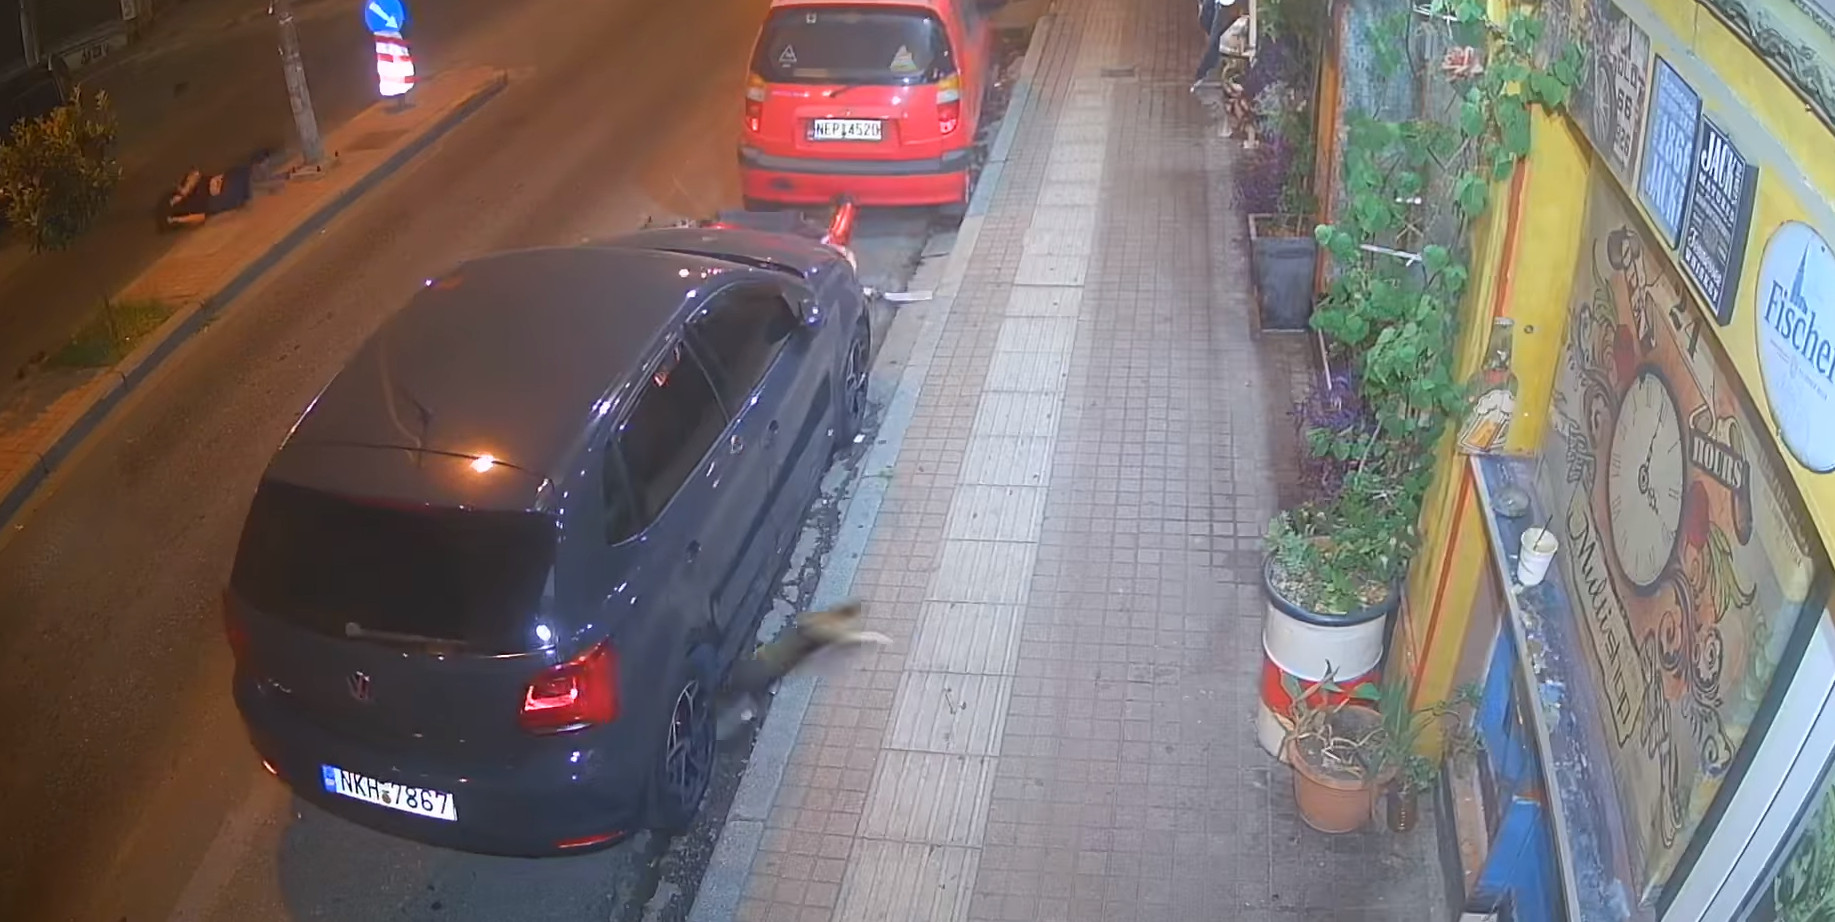 Θεσσαλονίκη: Σοκαριστικό βίντεο με τροχαίο - Χτύπησε οδηγό μηχανής και τον εγκατέλειψε